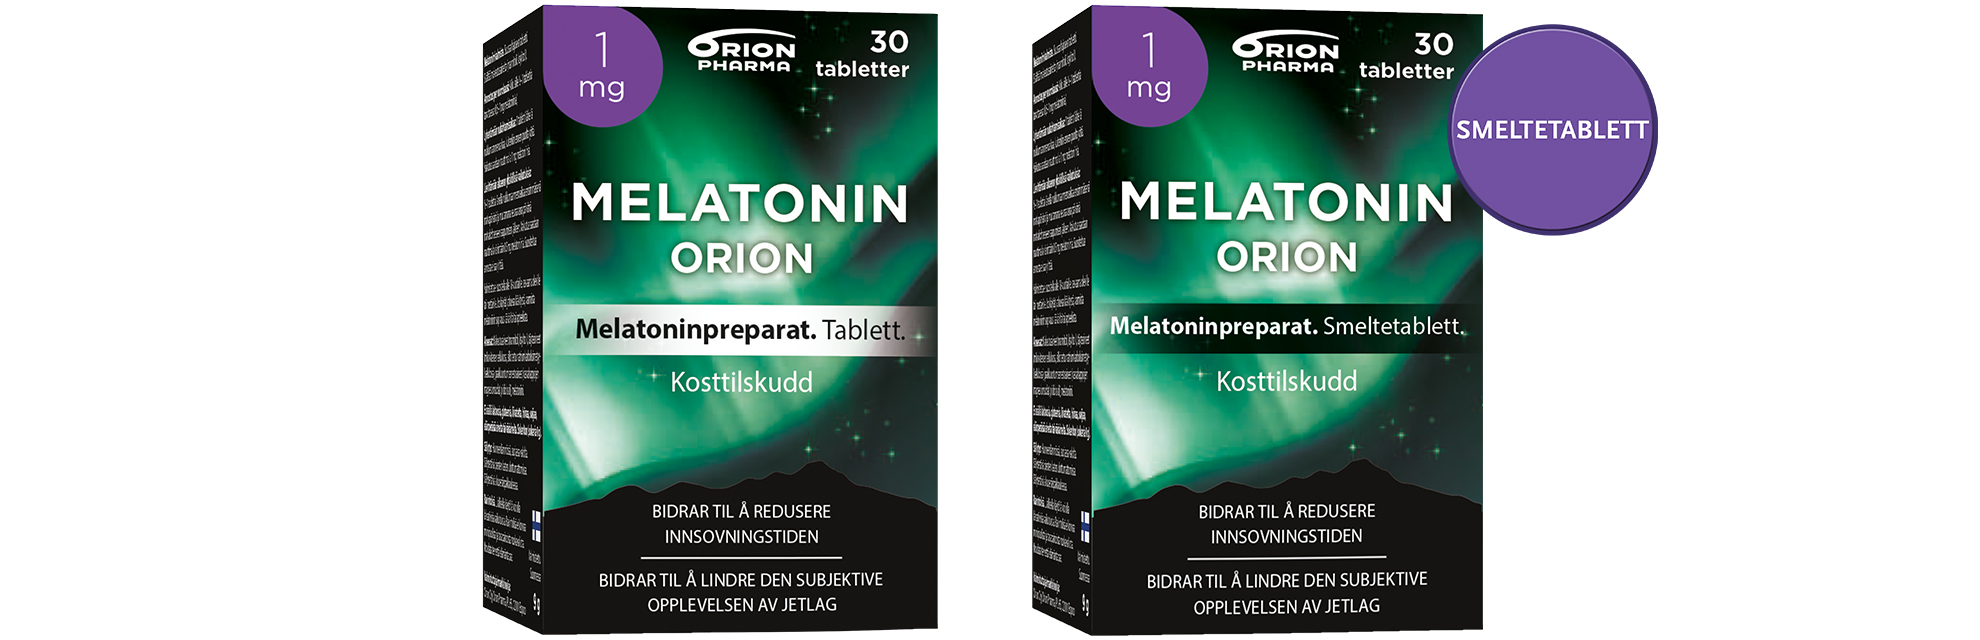 Produktbild Melatonin tablett og smeltetablett.jpg